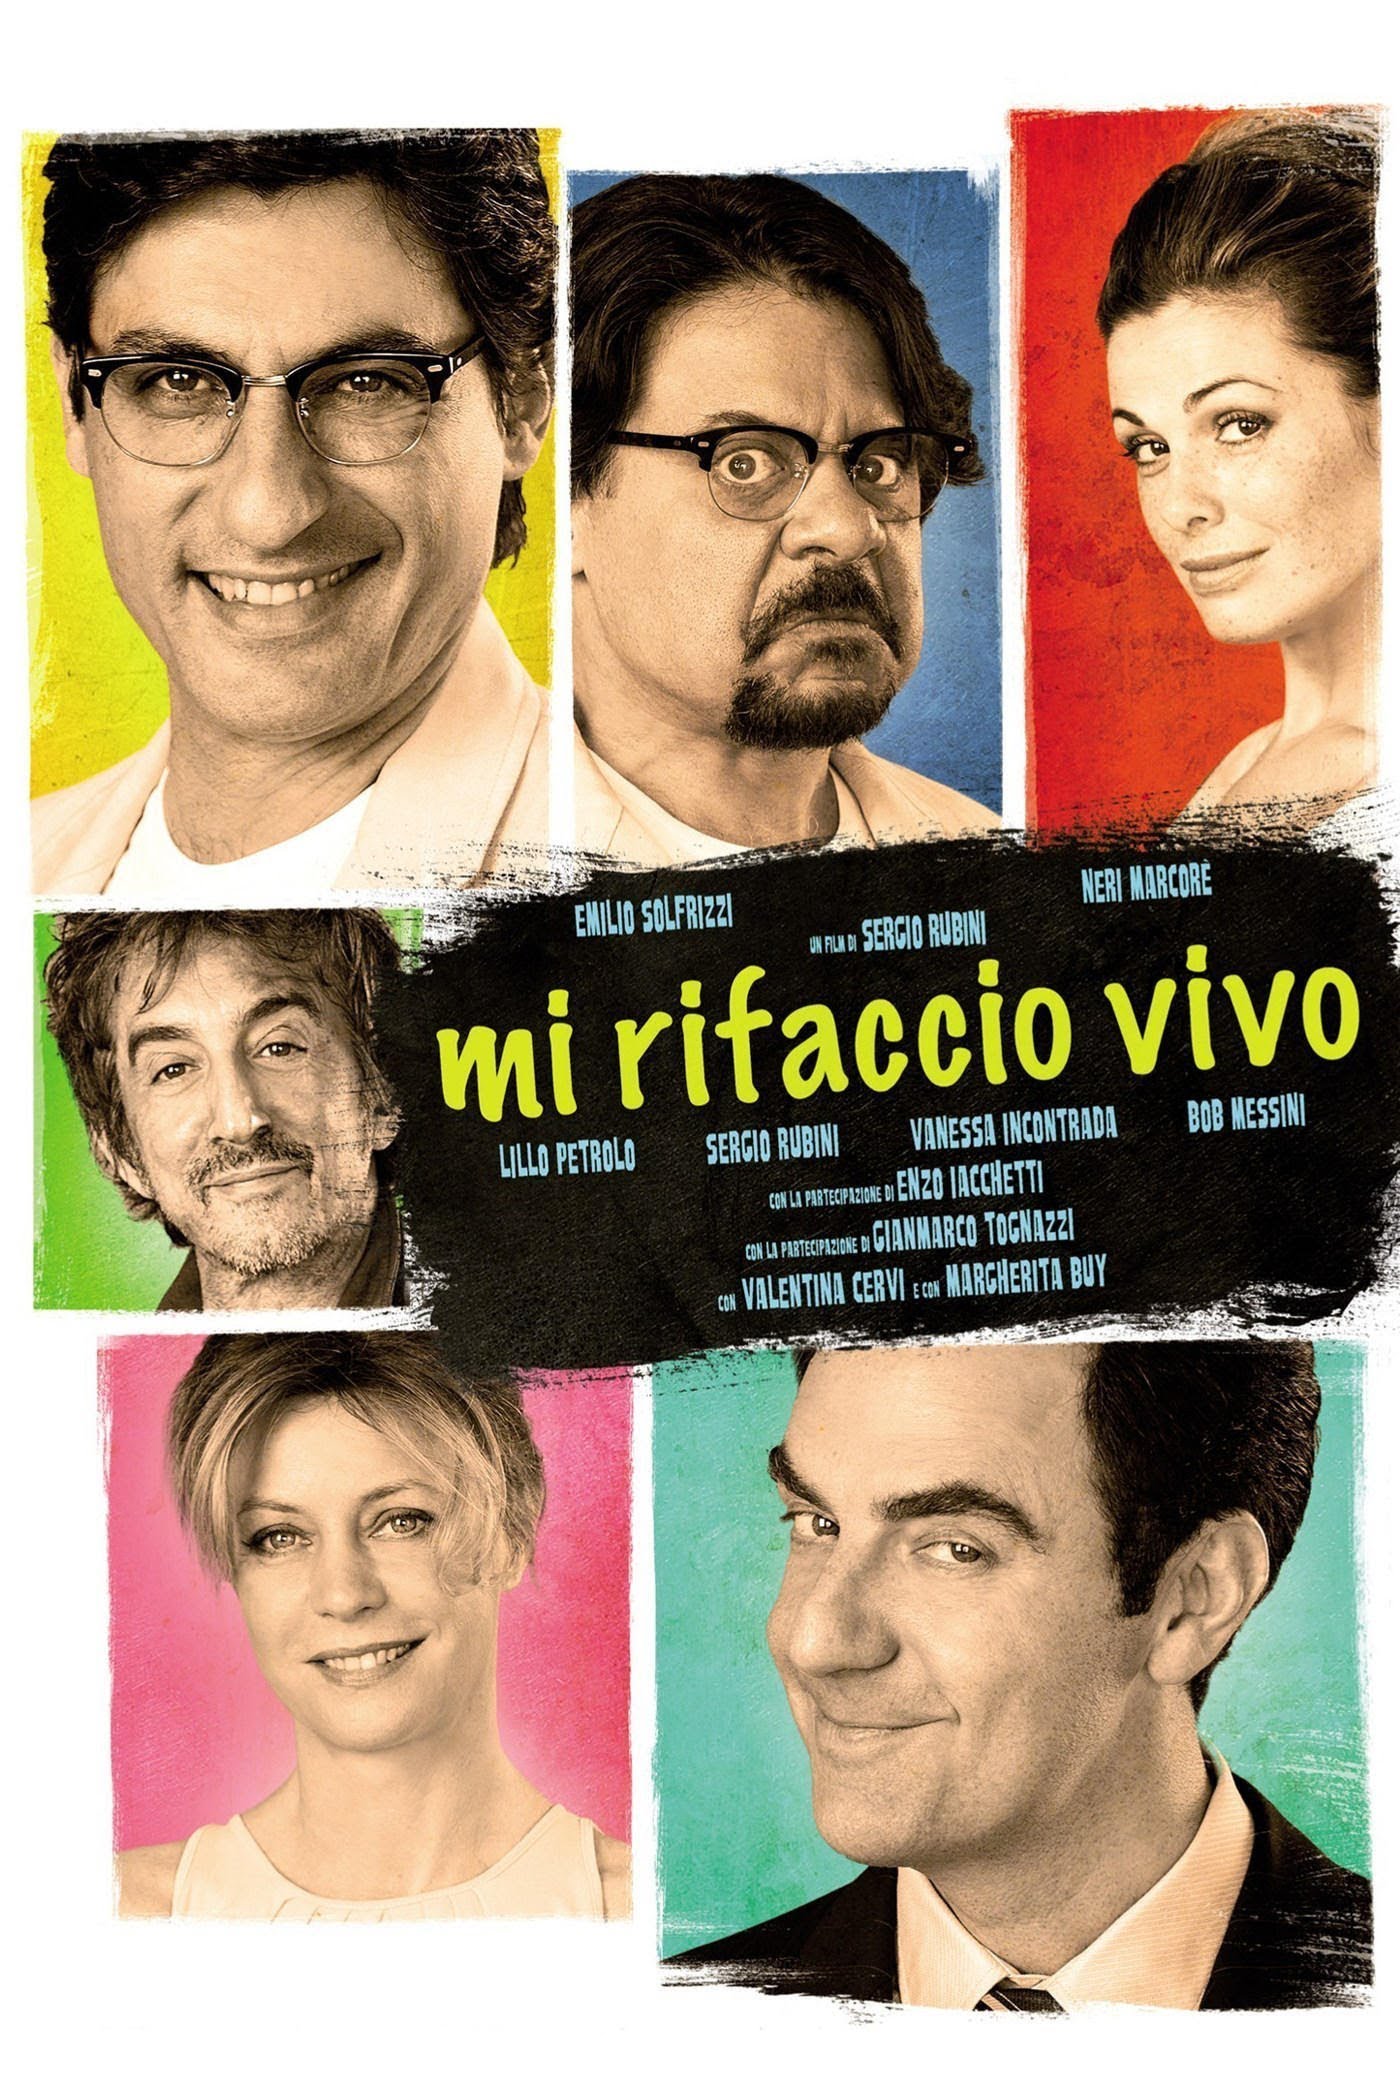 Mi rifaccio vivo [HD] (2013)